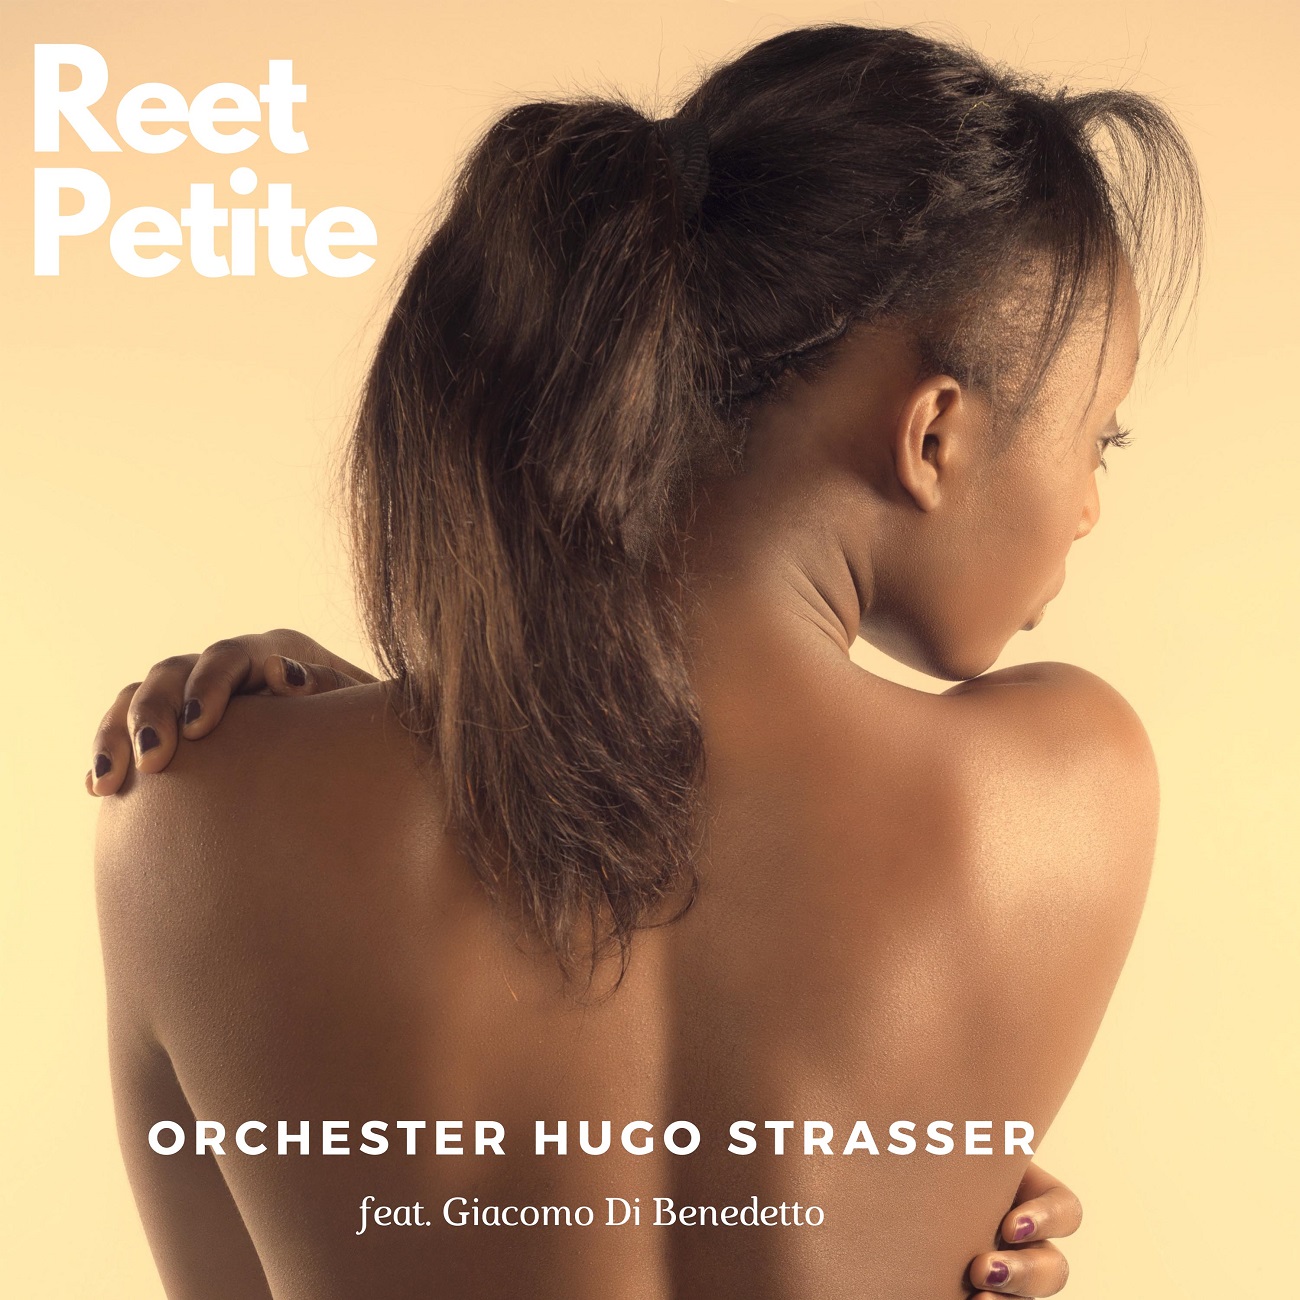 Orchester Hugo Strasser - Reetpetite - Cover.jpg